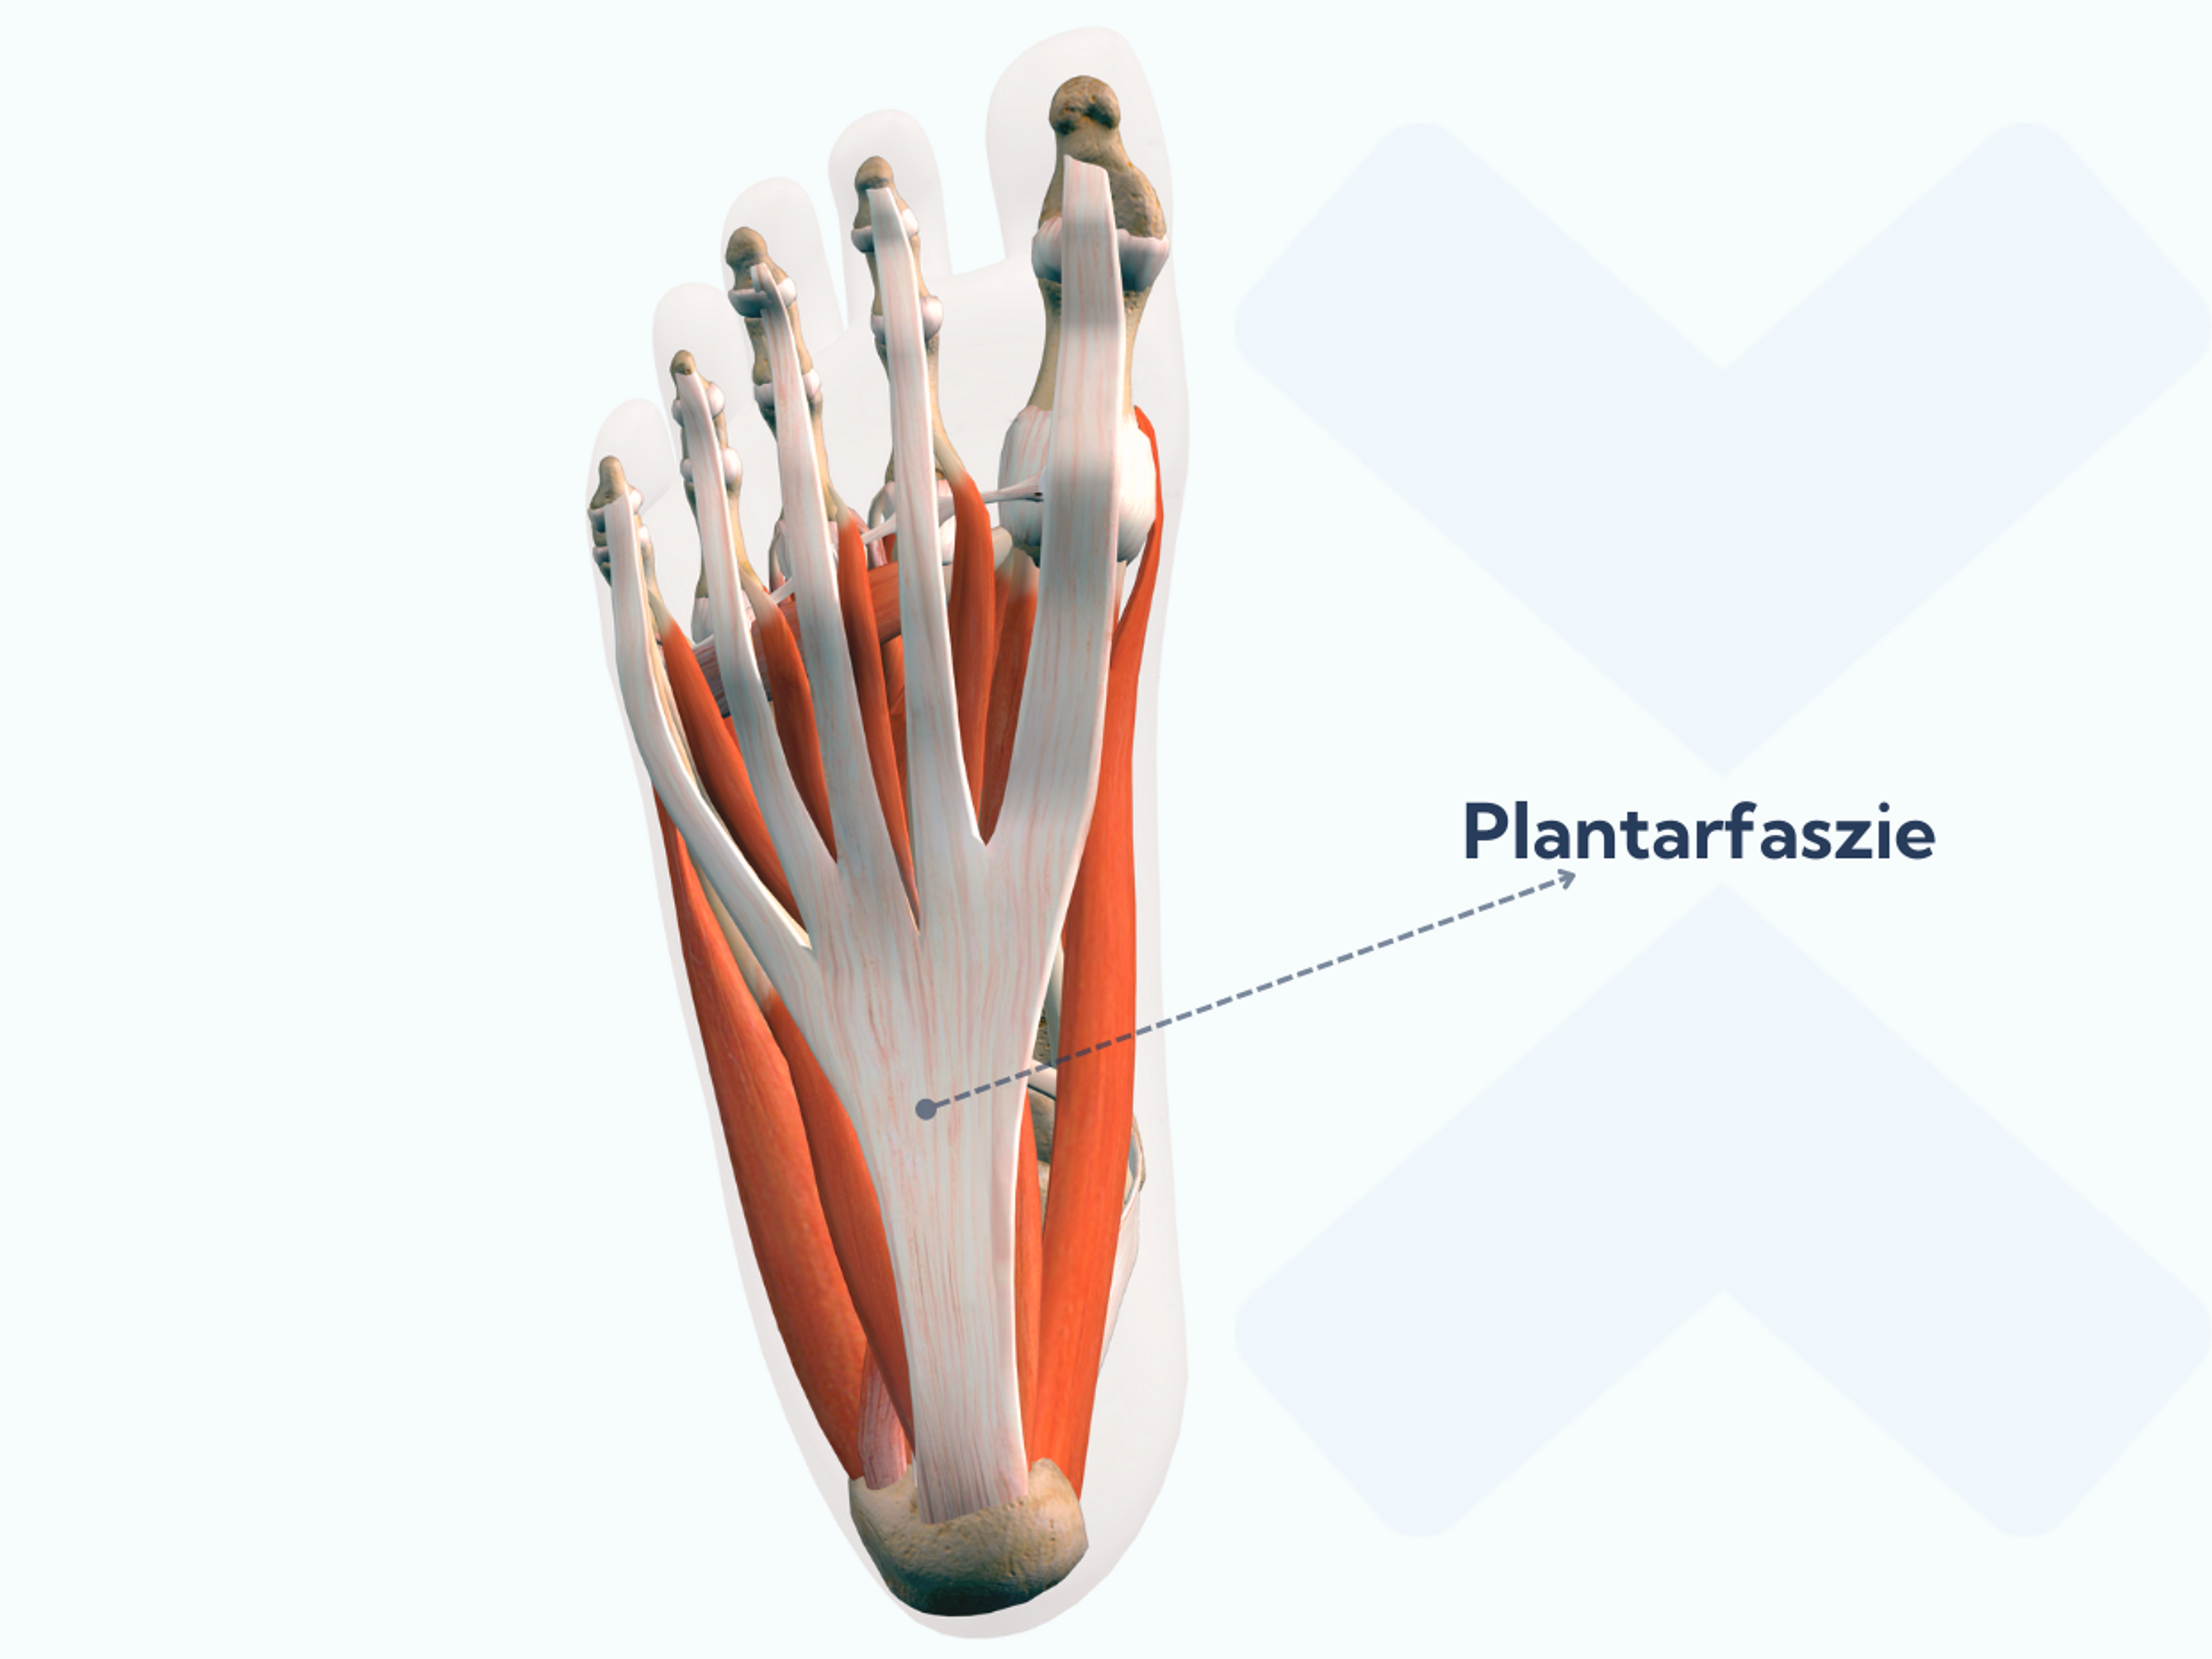 Plantarfasziitis äußert sich durch Fußschmerzen an der Innenseite des Fersenbeins, wo die Plantarfaszie ansetzt.